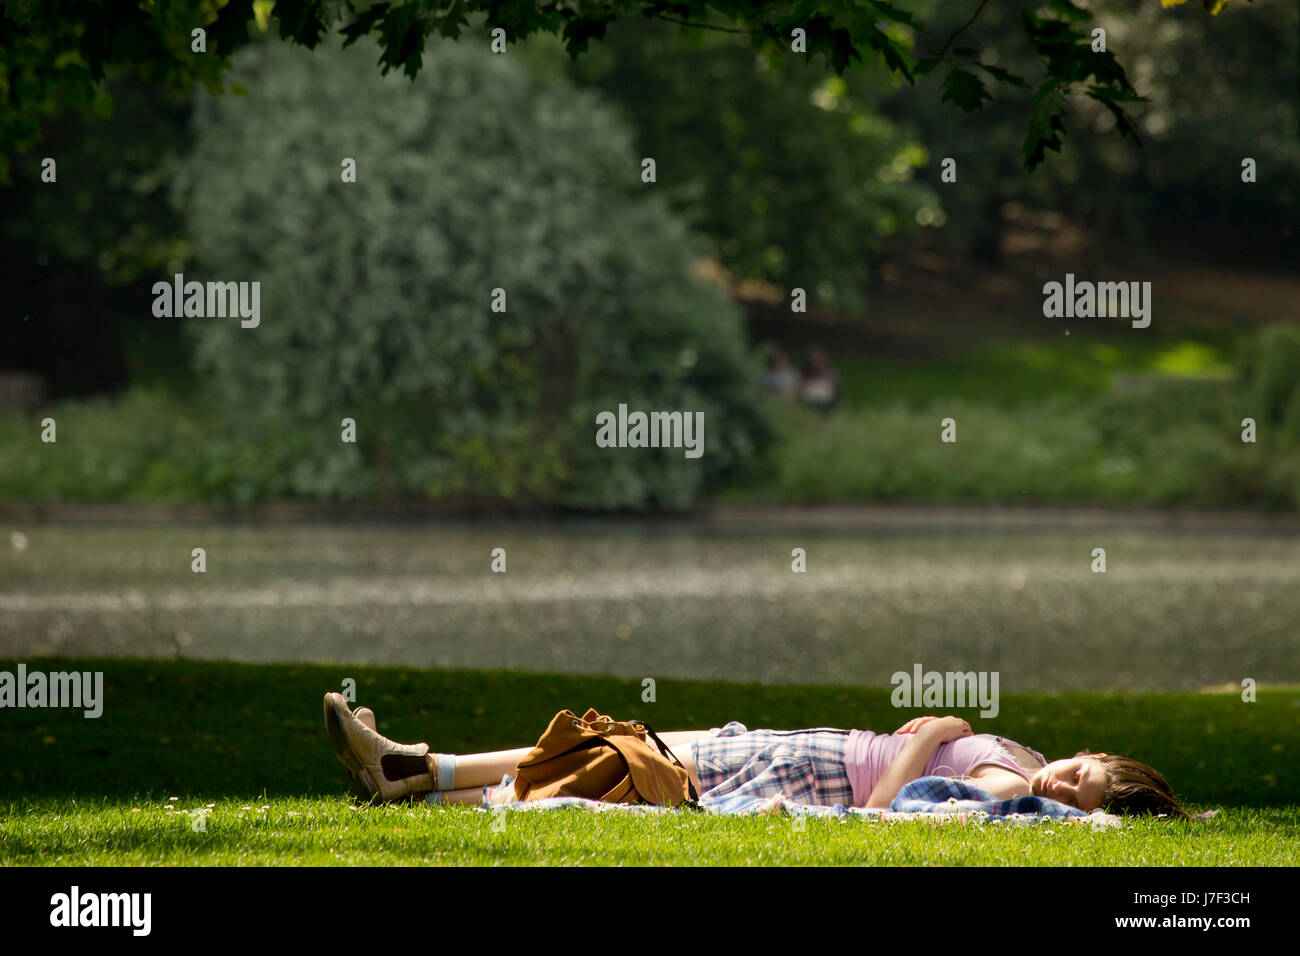 Londres, Royaume-Uni. 25 mai, 2017. 25 mai, 2017. Les personnes bénéficiant du soleil à St James Park, Londres Crédit : Sebastian Remme/Alamy Live News Banque D'Images